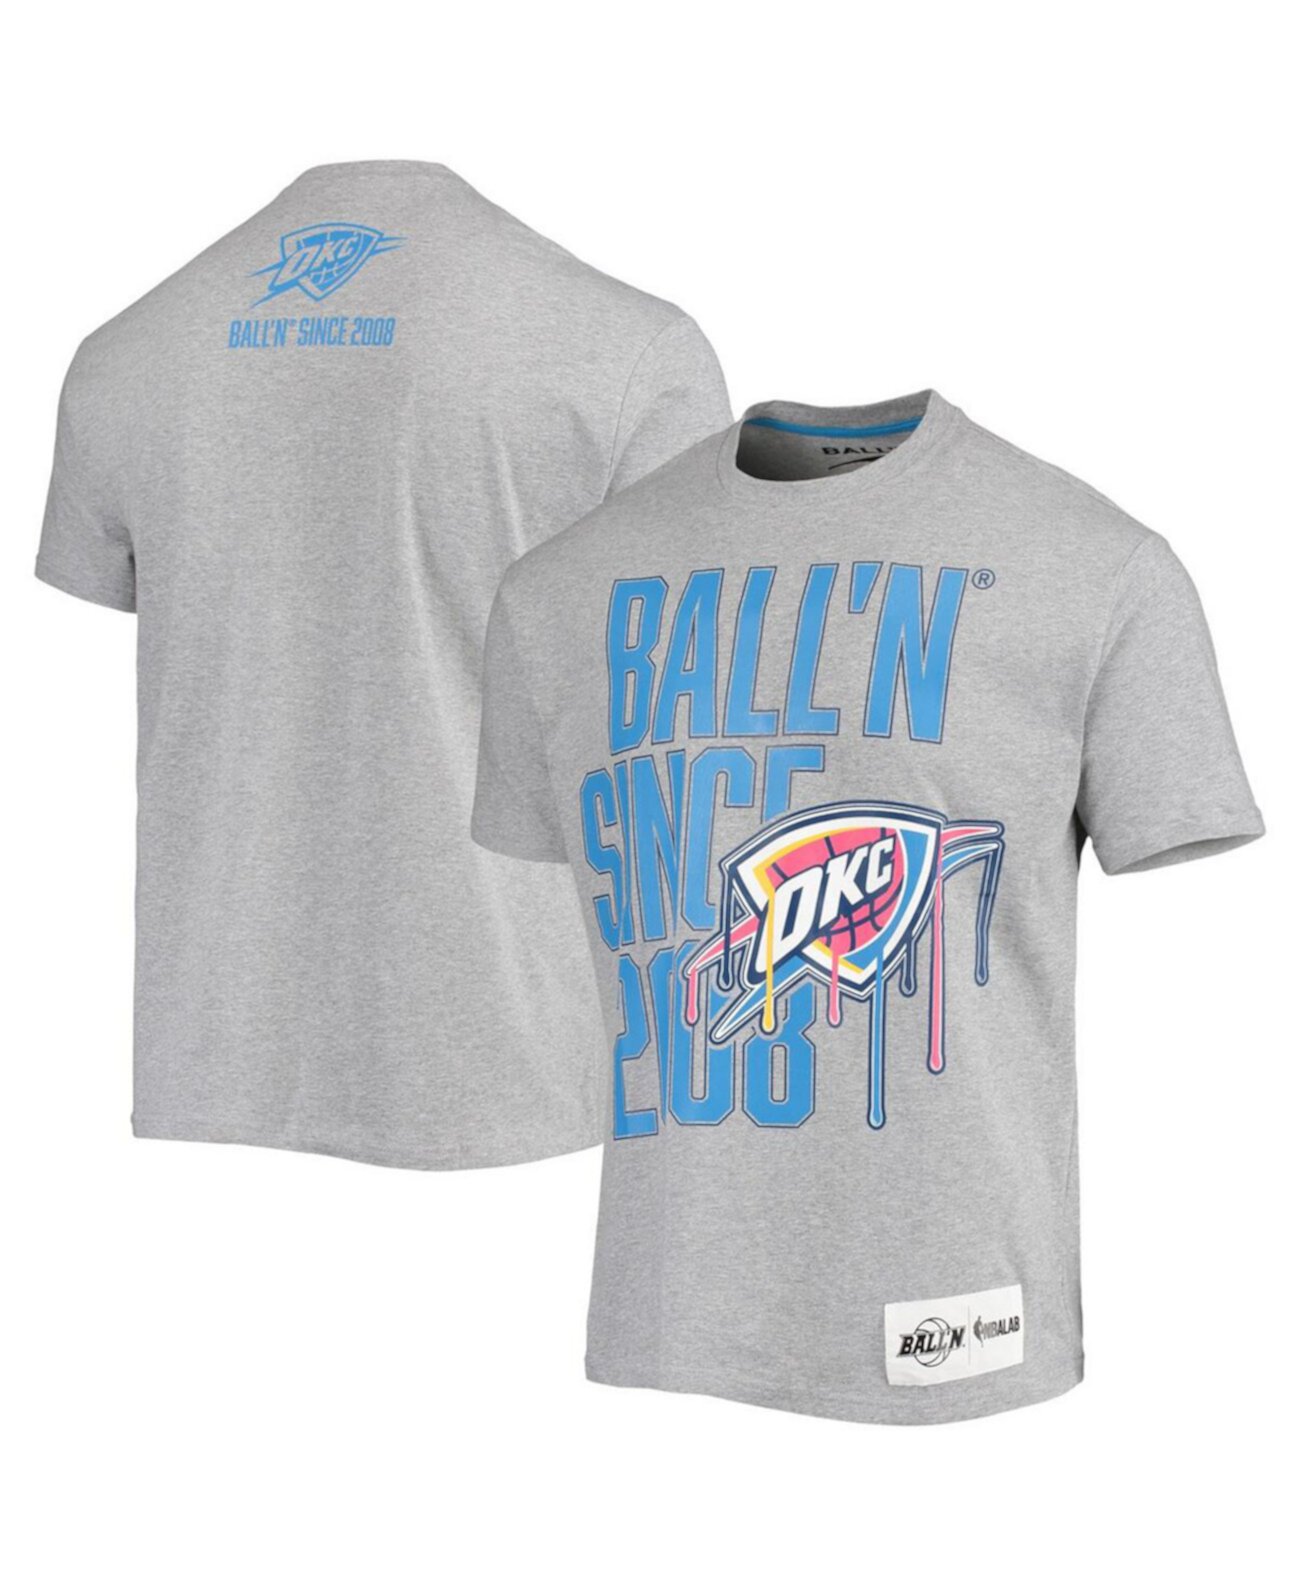 Мужская серая футболка с меланжевым принтом Oklahoma City Thunder с 2008 года BALL'N